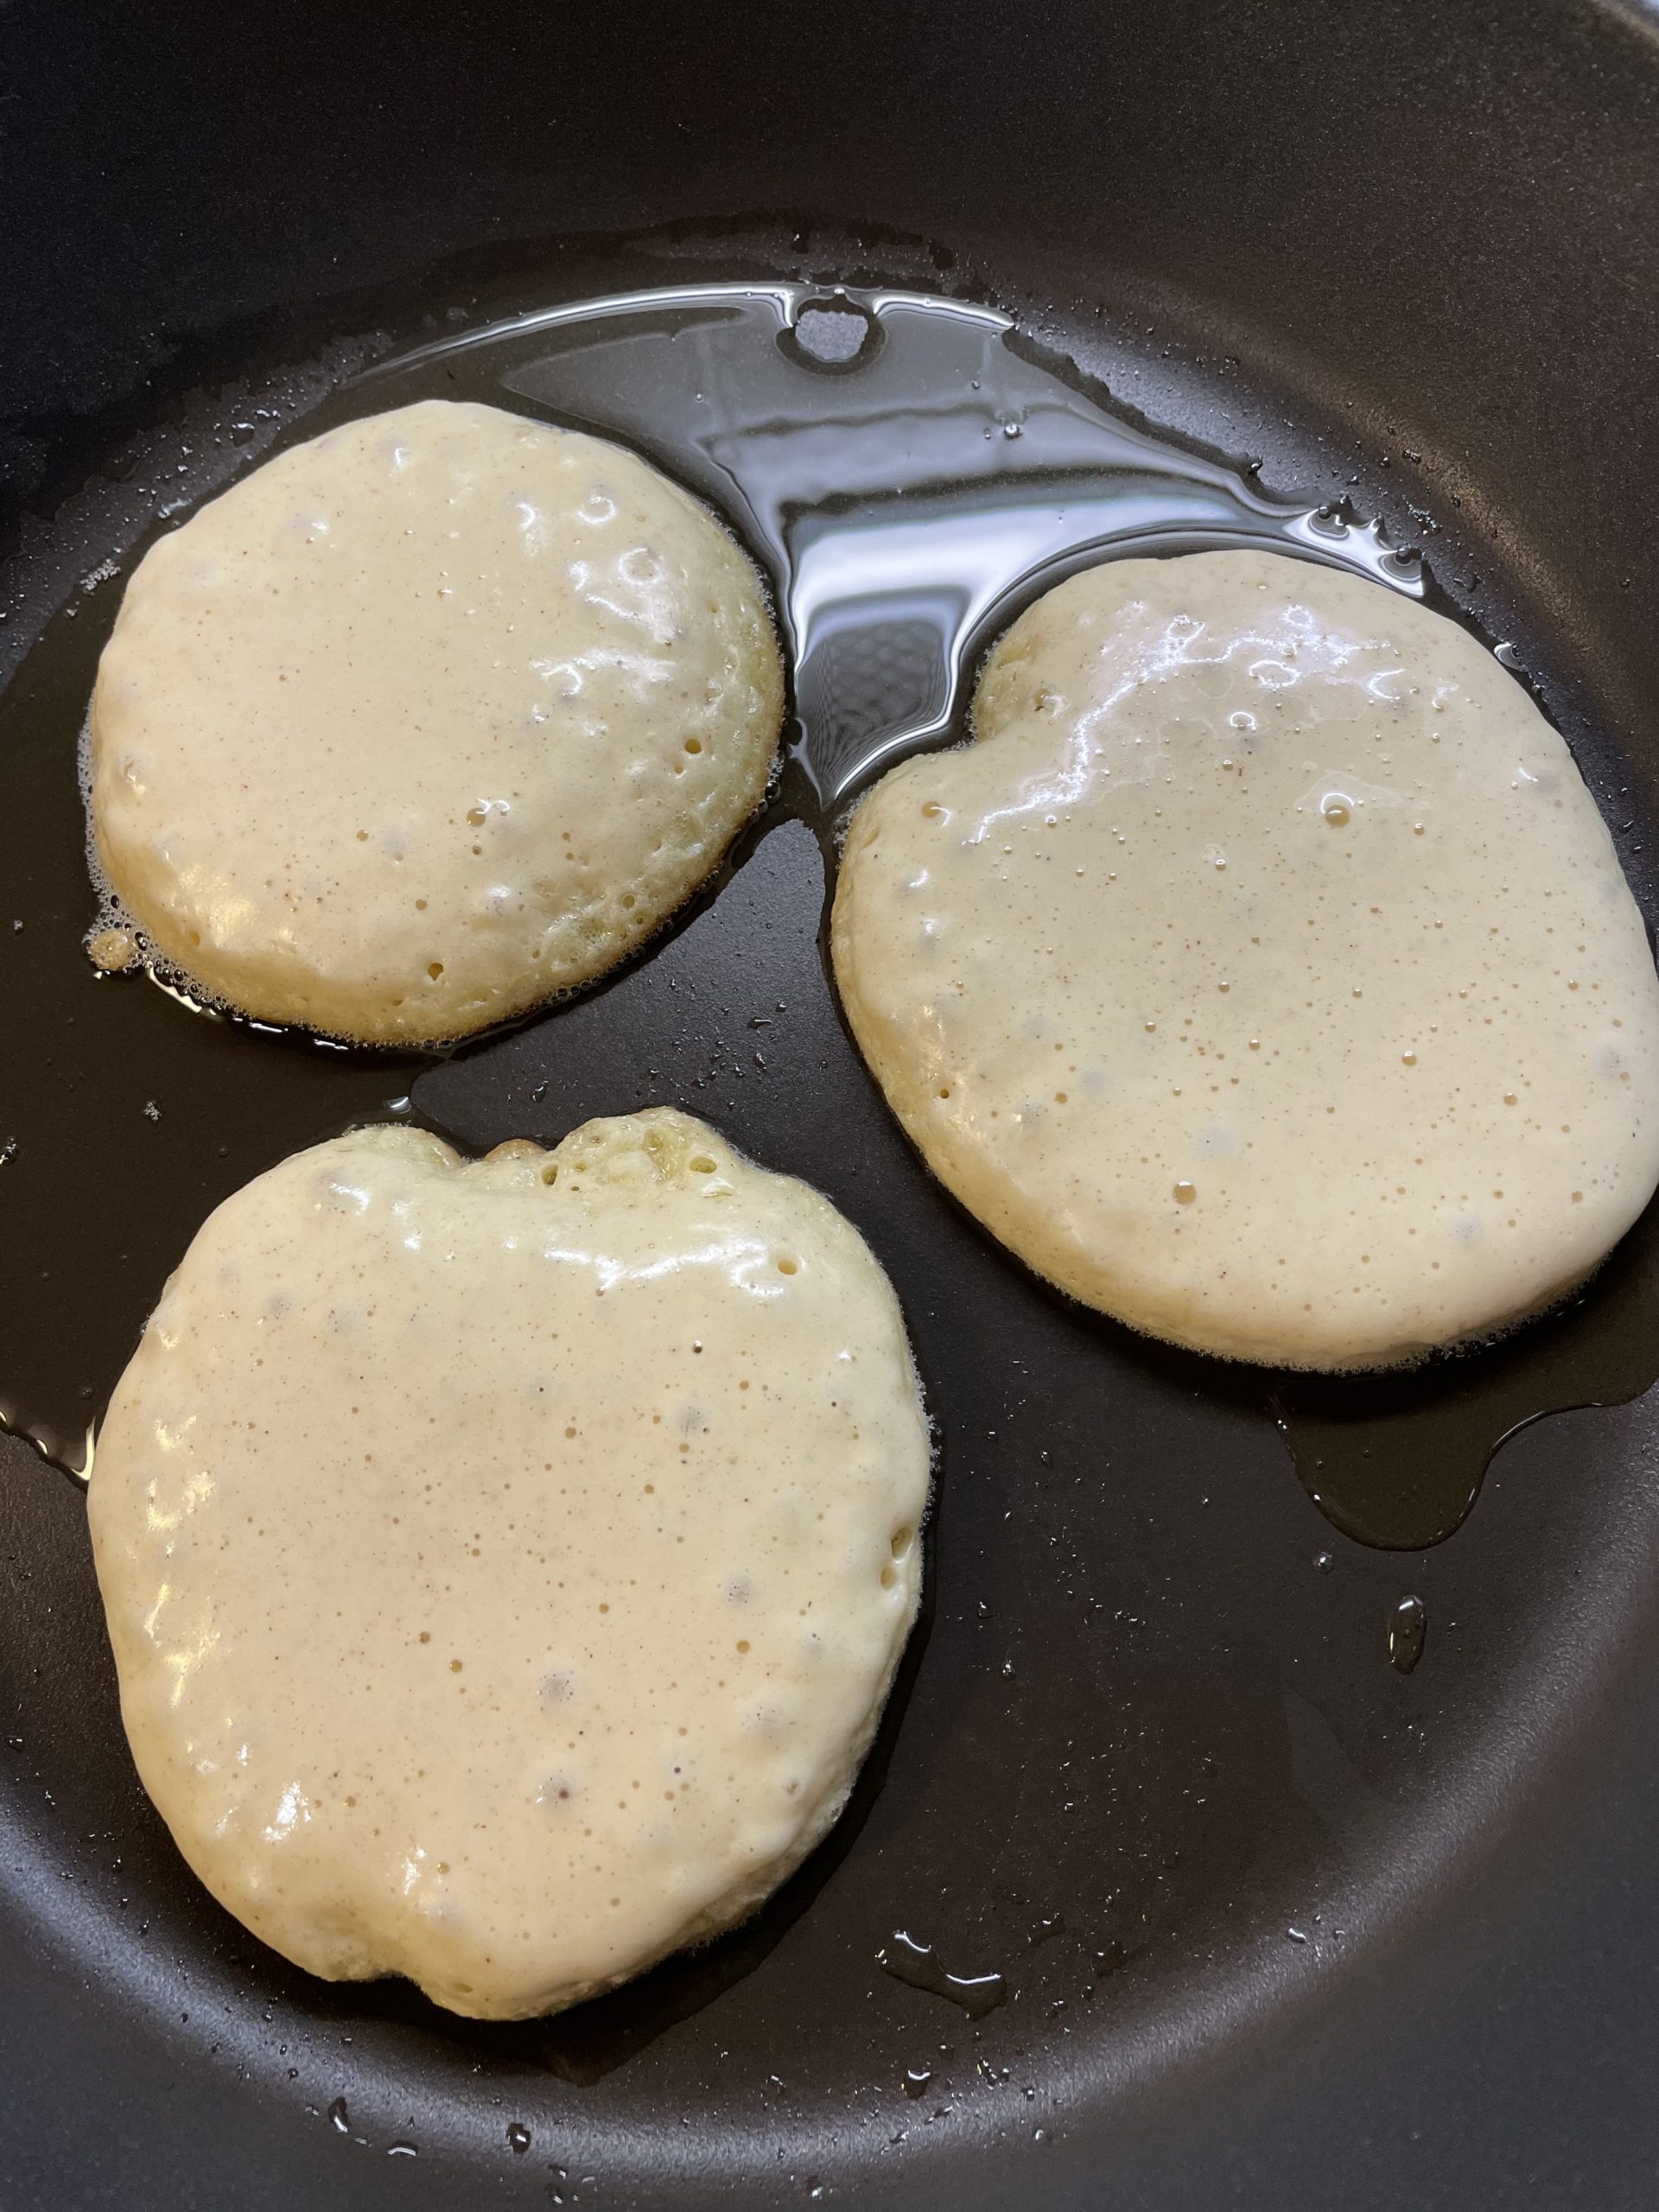 Bild zum Schritt 9 für das Bastel- und DIY-Abenteuer für Kinder: 'Nach ein paar Minuten beginnen die Pancakes dicker zu werden....'